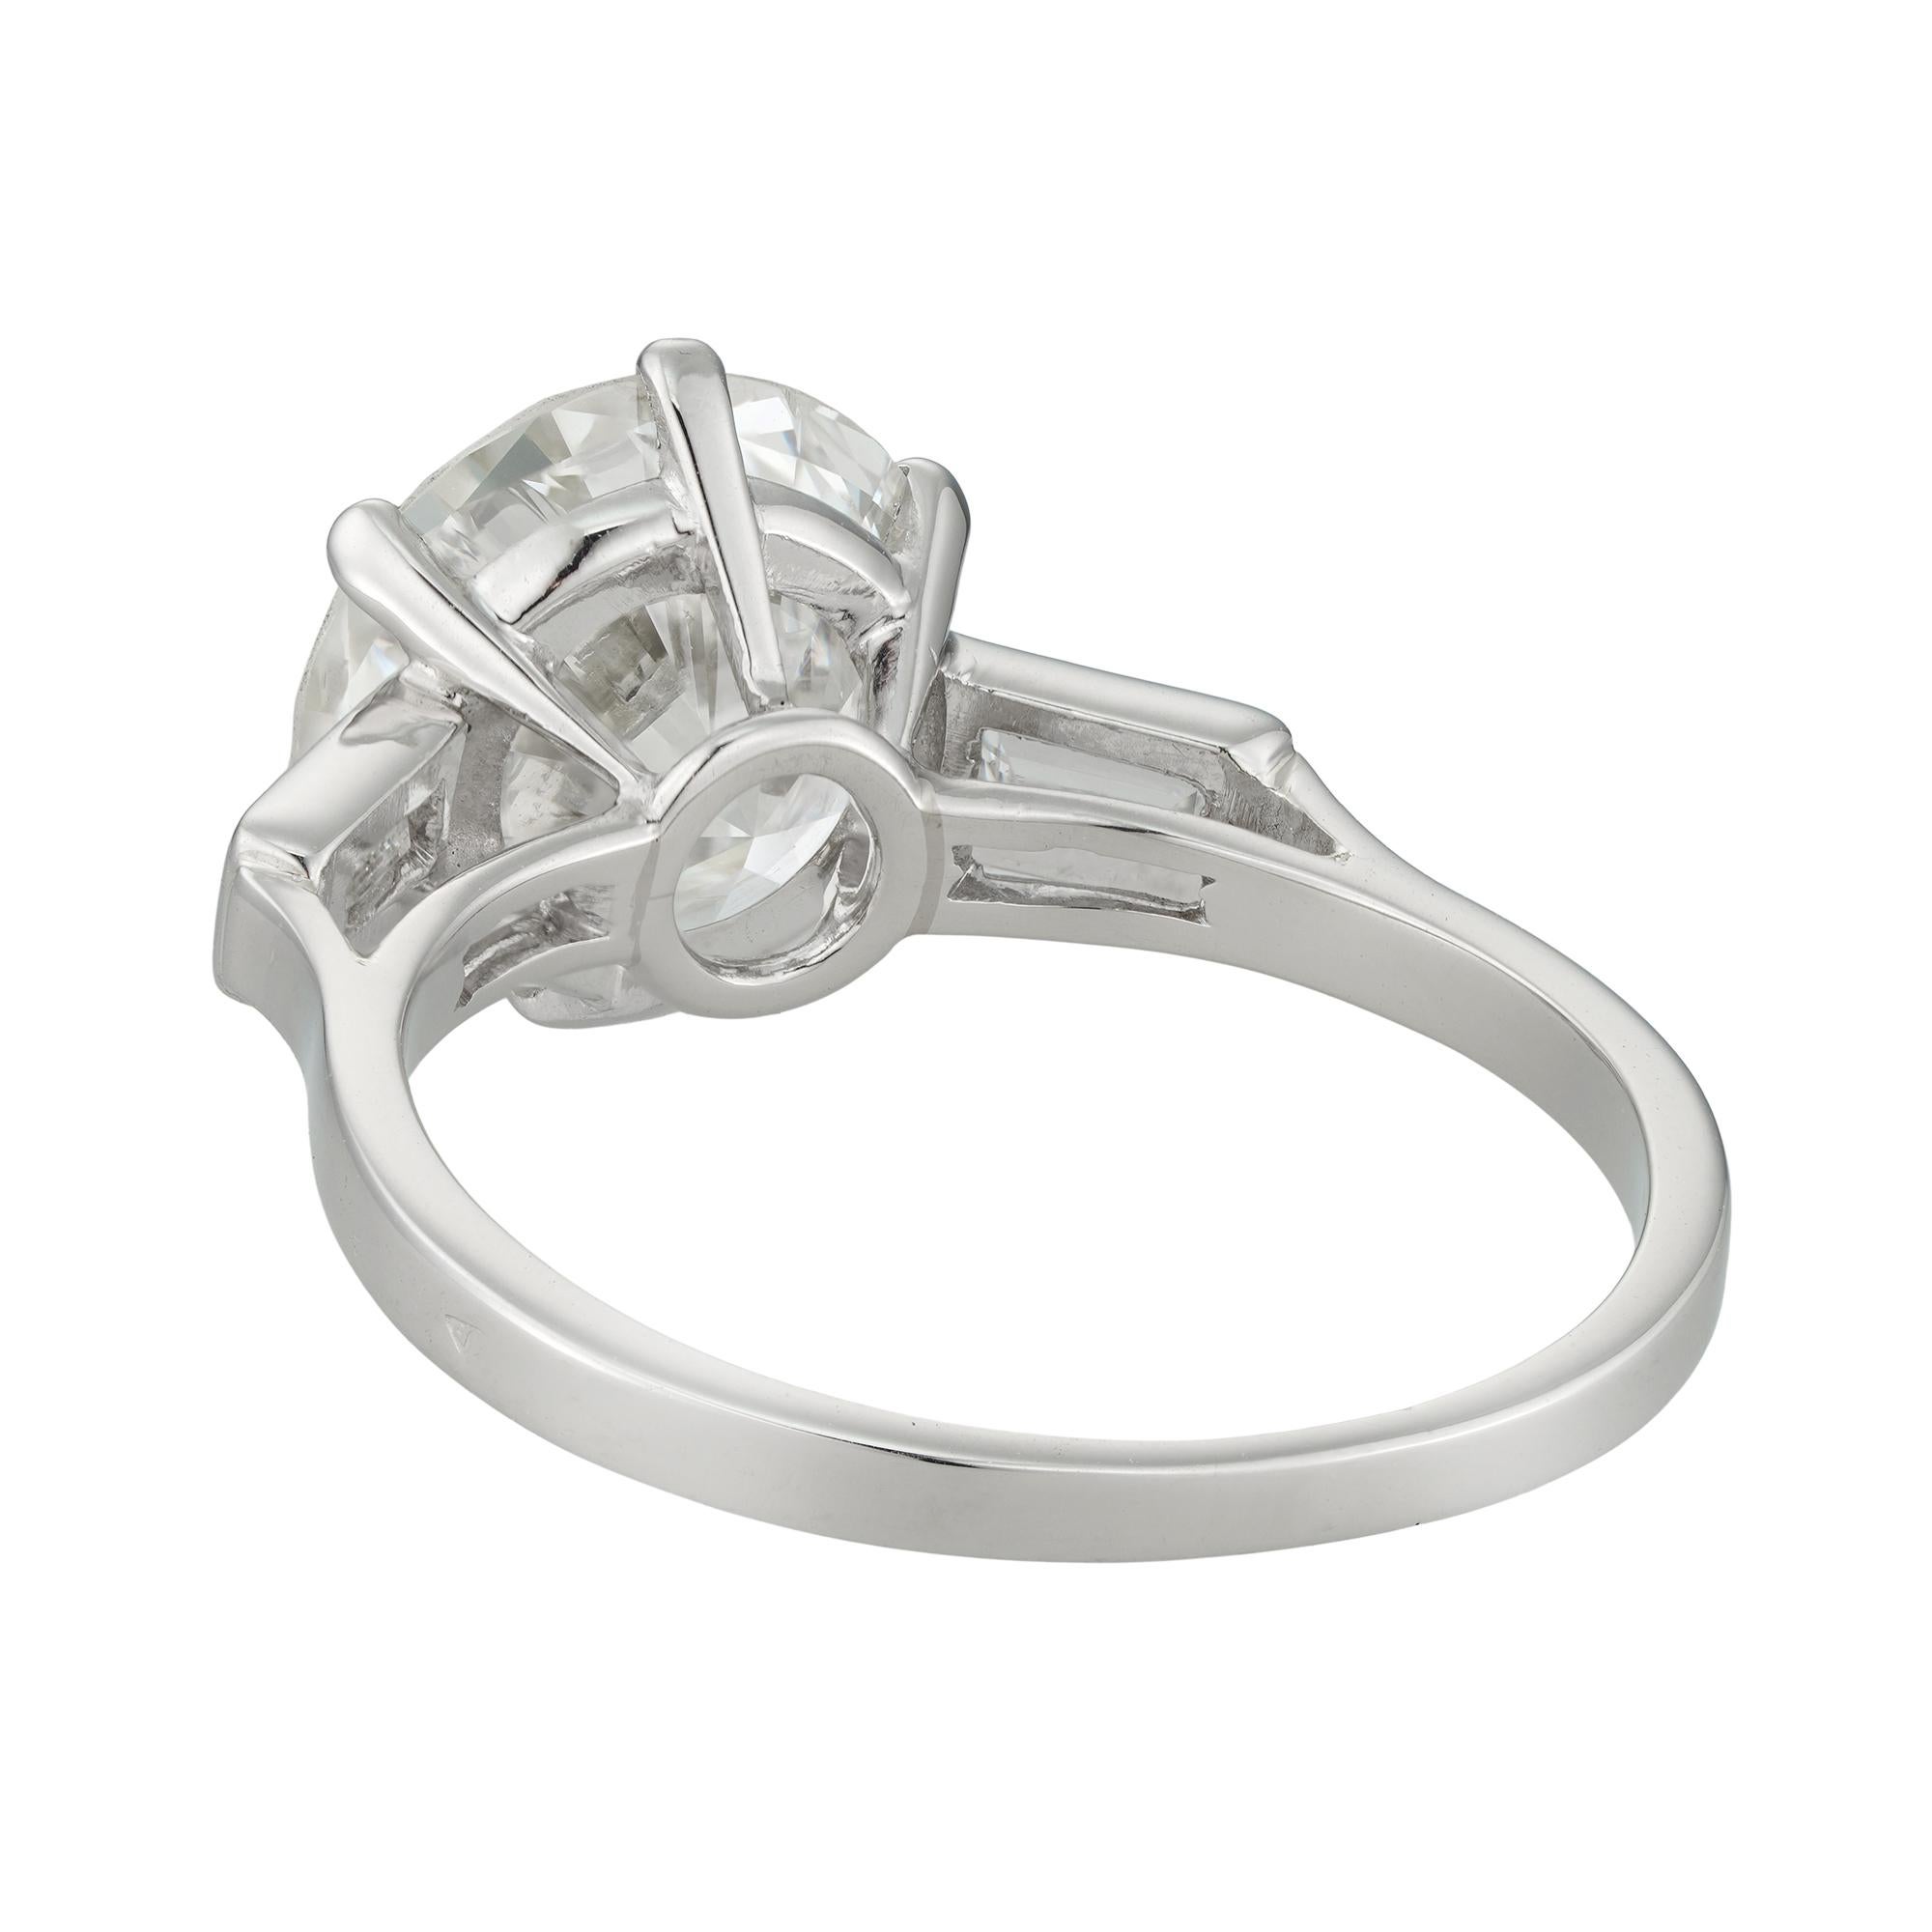 Brilliant Cut A Single Stone Solitaire Diamond Ring For Sale